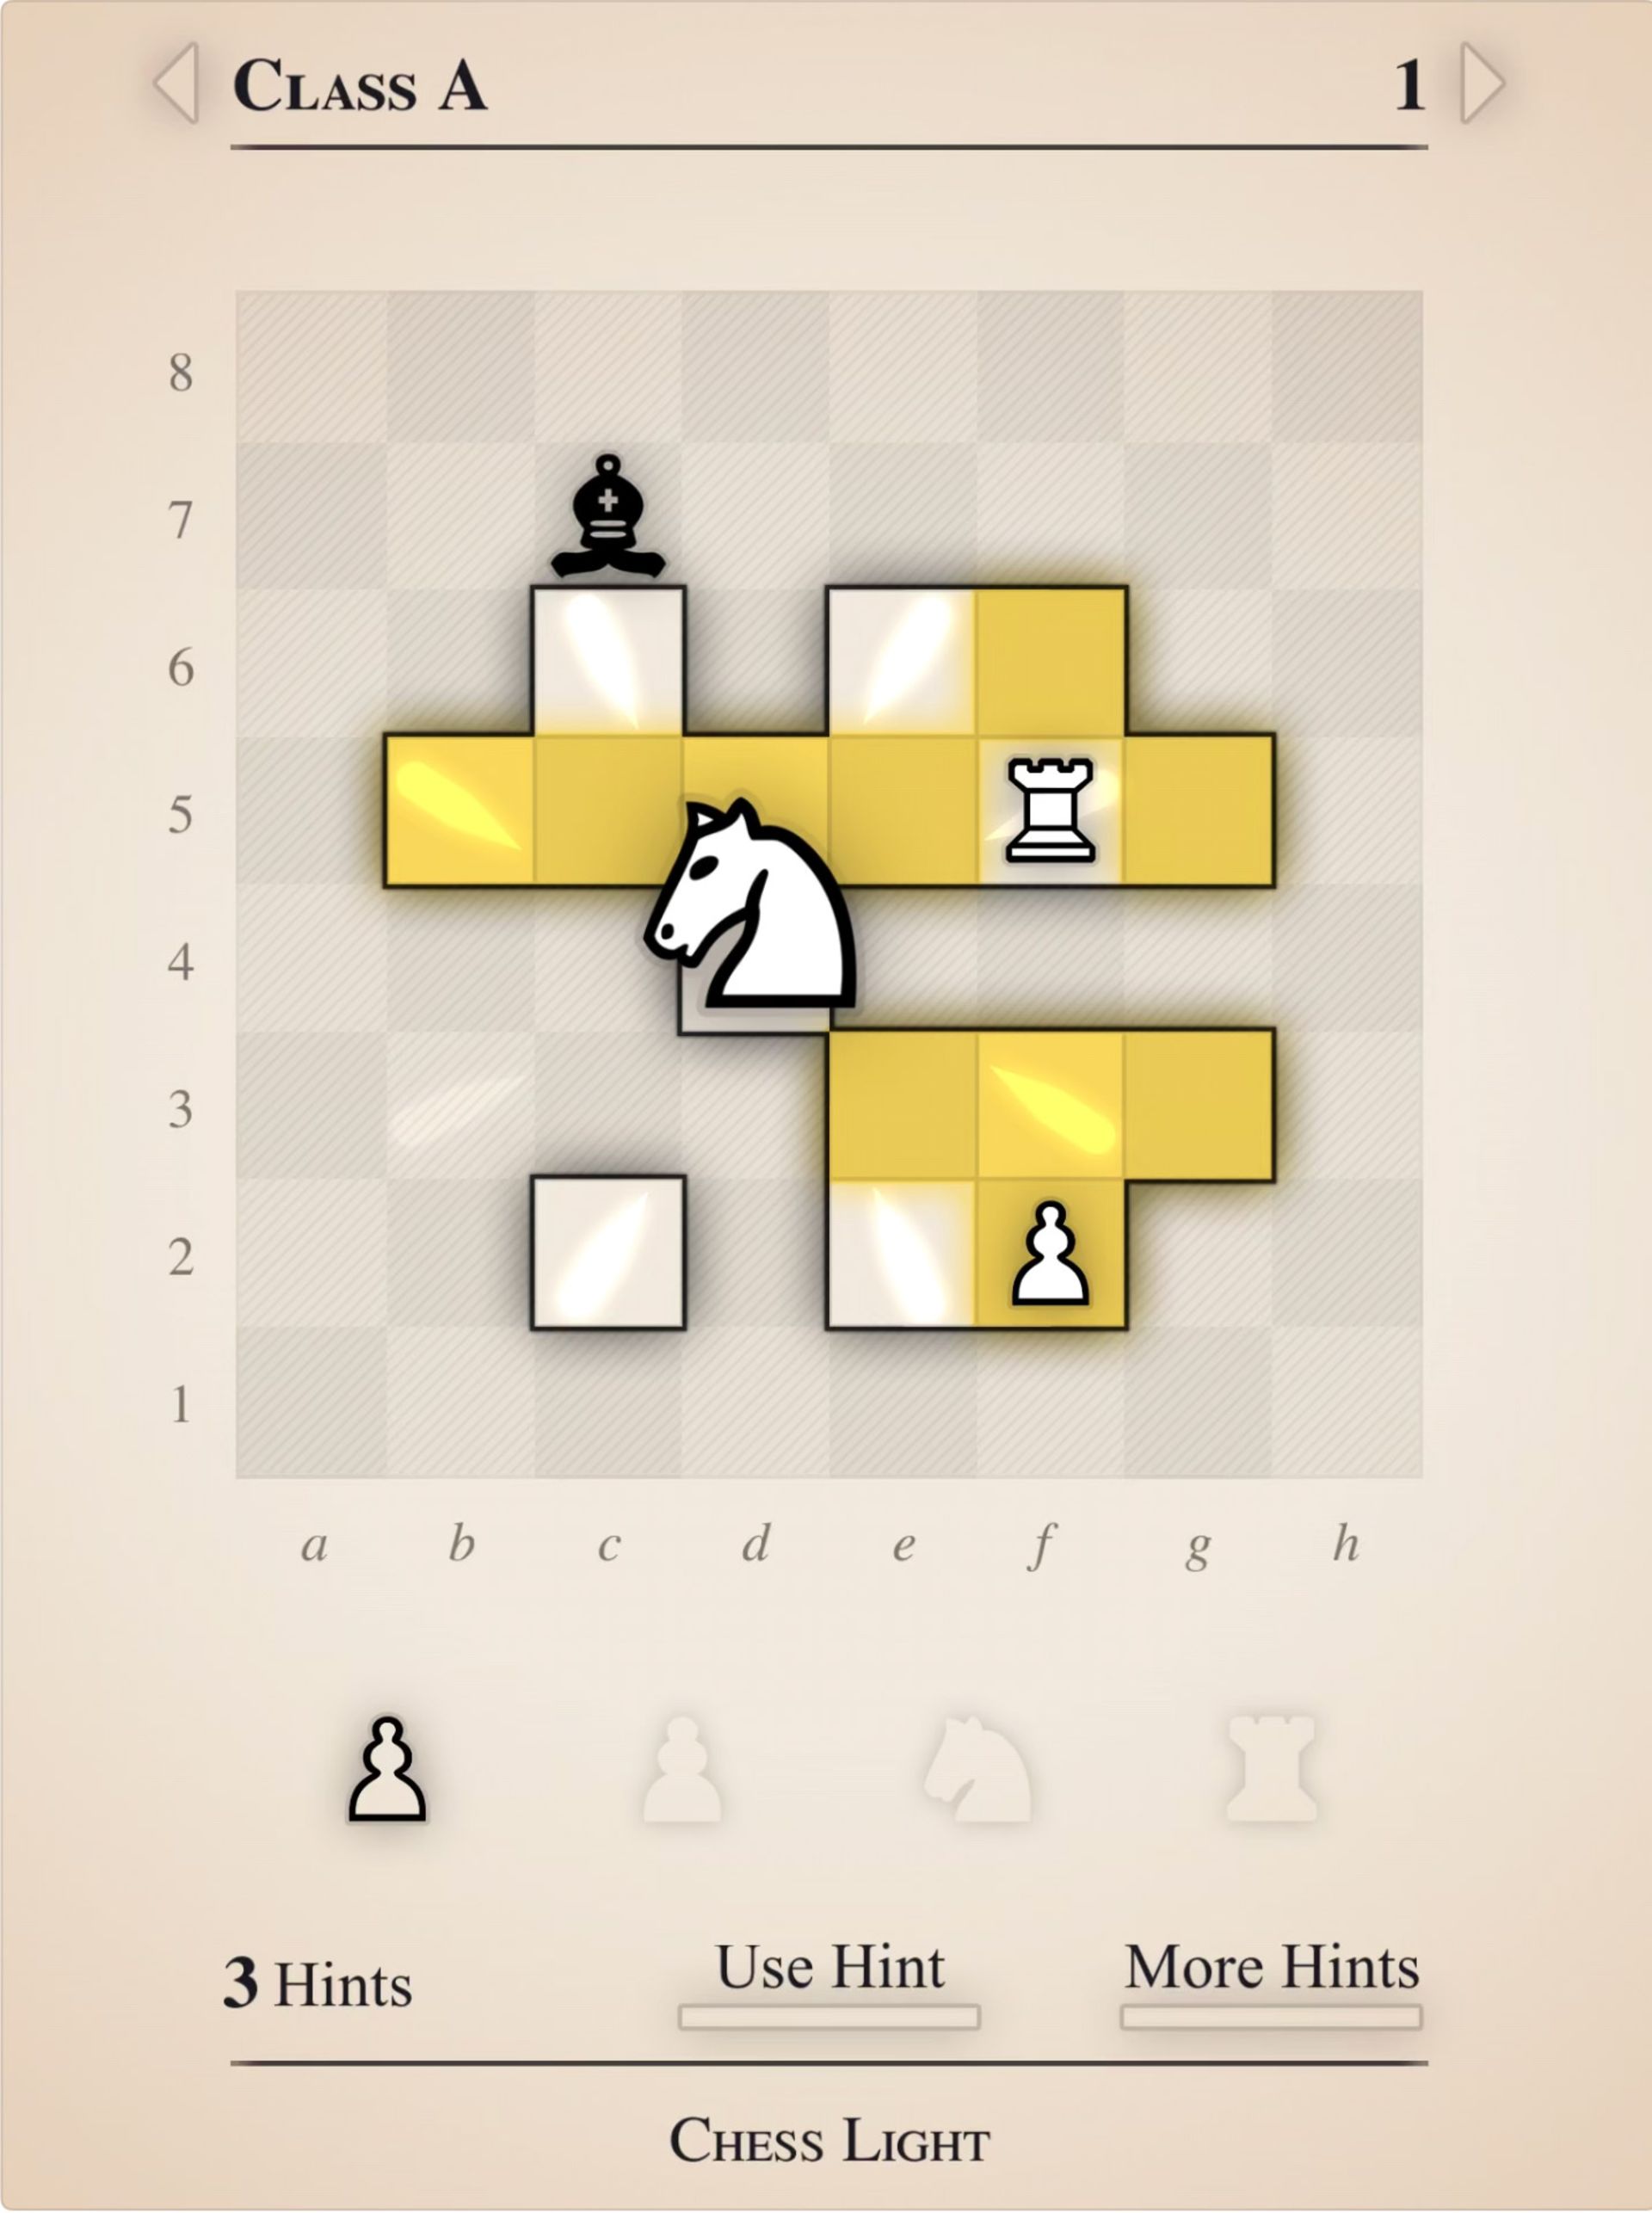 Chess light